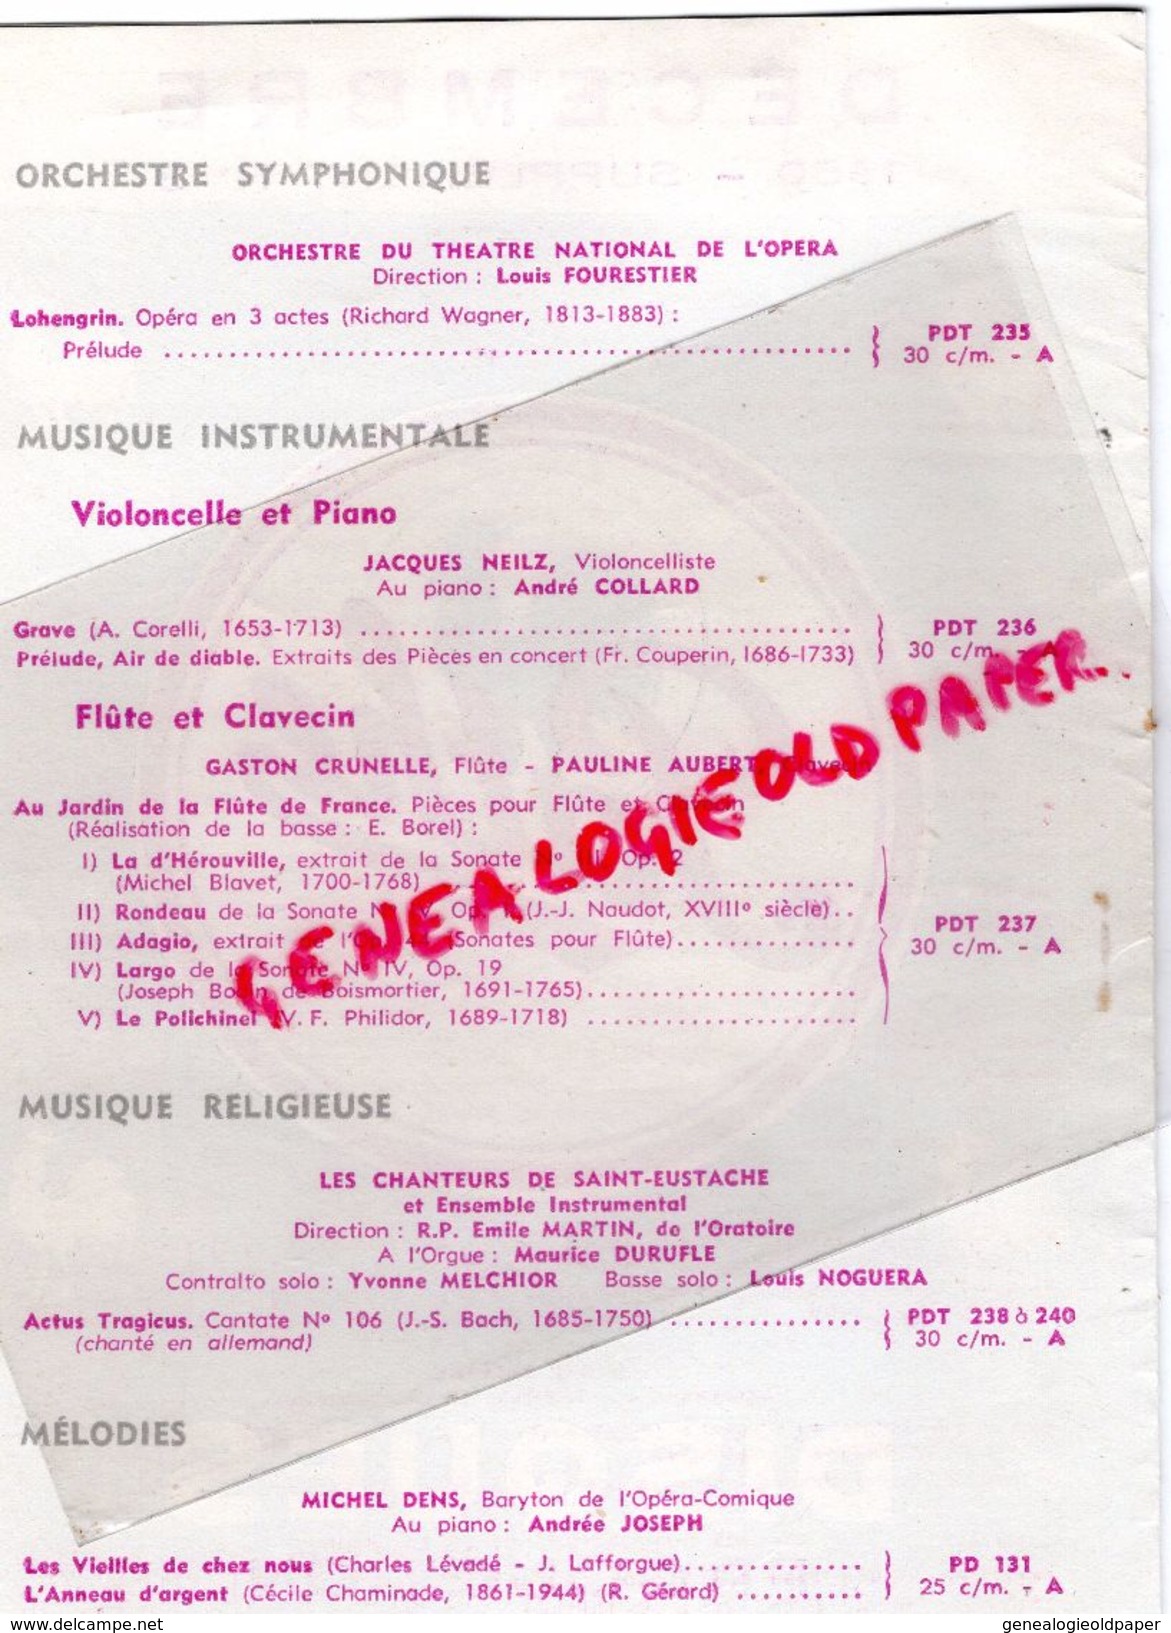 75- PARIS- DEPLIANT PUBLICITAIRE DISQUES PATHE MARCONI-DECEMBRE 1950-IMPRIMERIE JOLY-15 RUE BOUCHARDON-RADIO TSF - Werbung